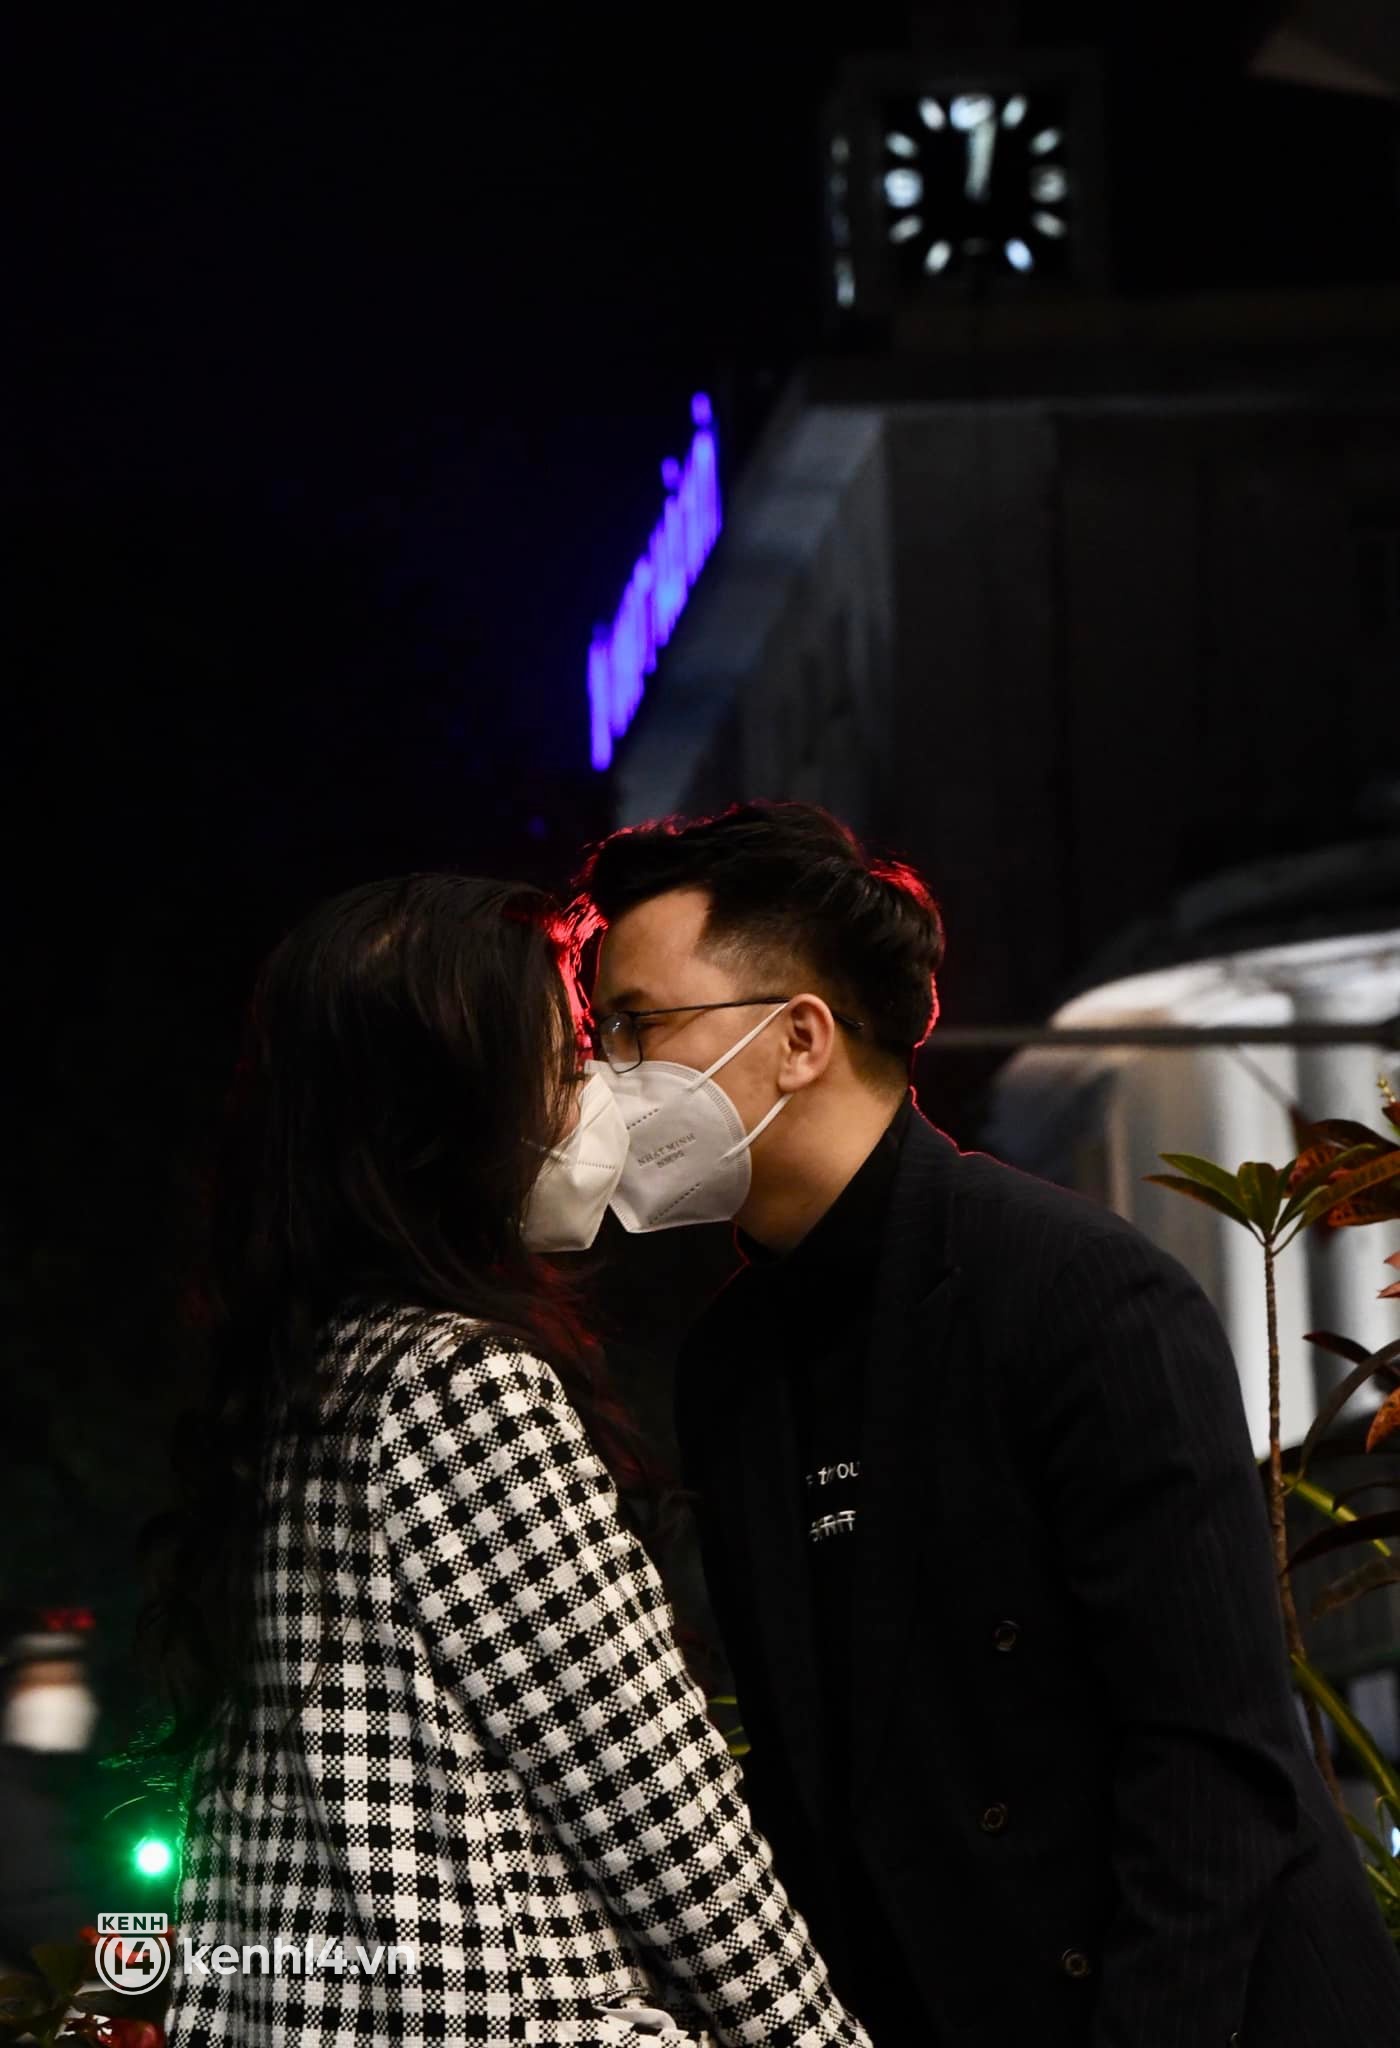 Ảnh: Nhiều cặp đôi trao nhau nụ hôn qua lớp khẩu trang, đánh dấu thời khắc chuyển giao năm mới 2022 - Ảnh 2.